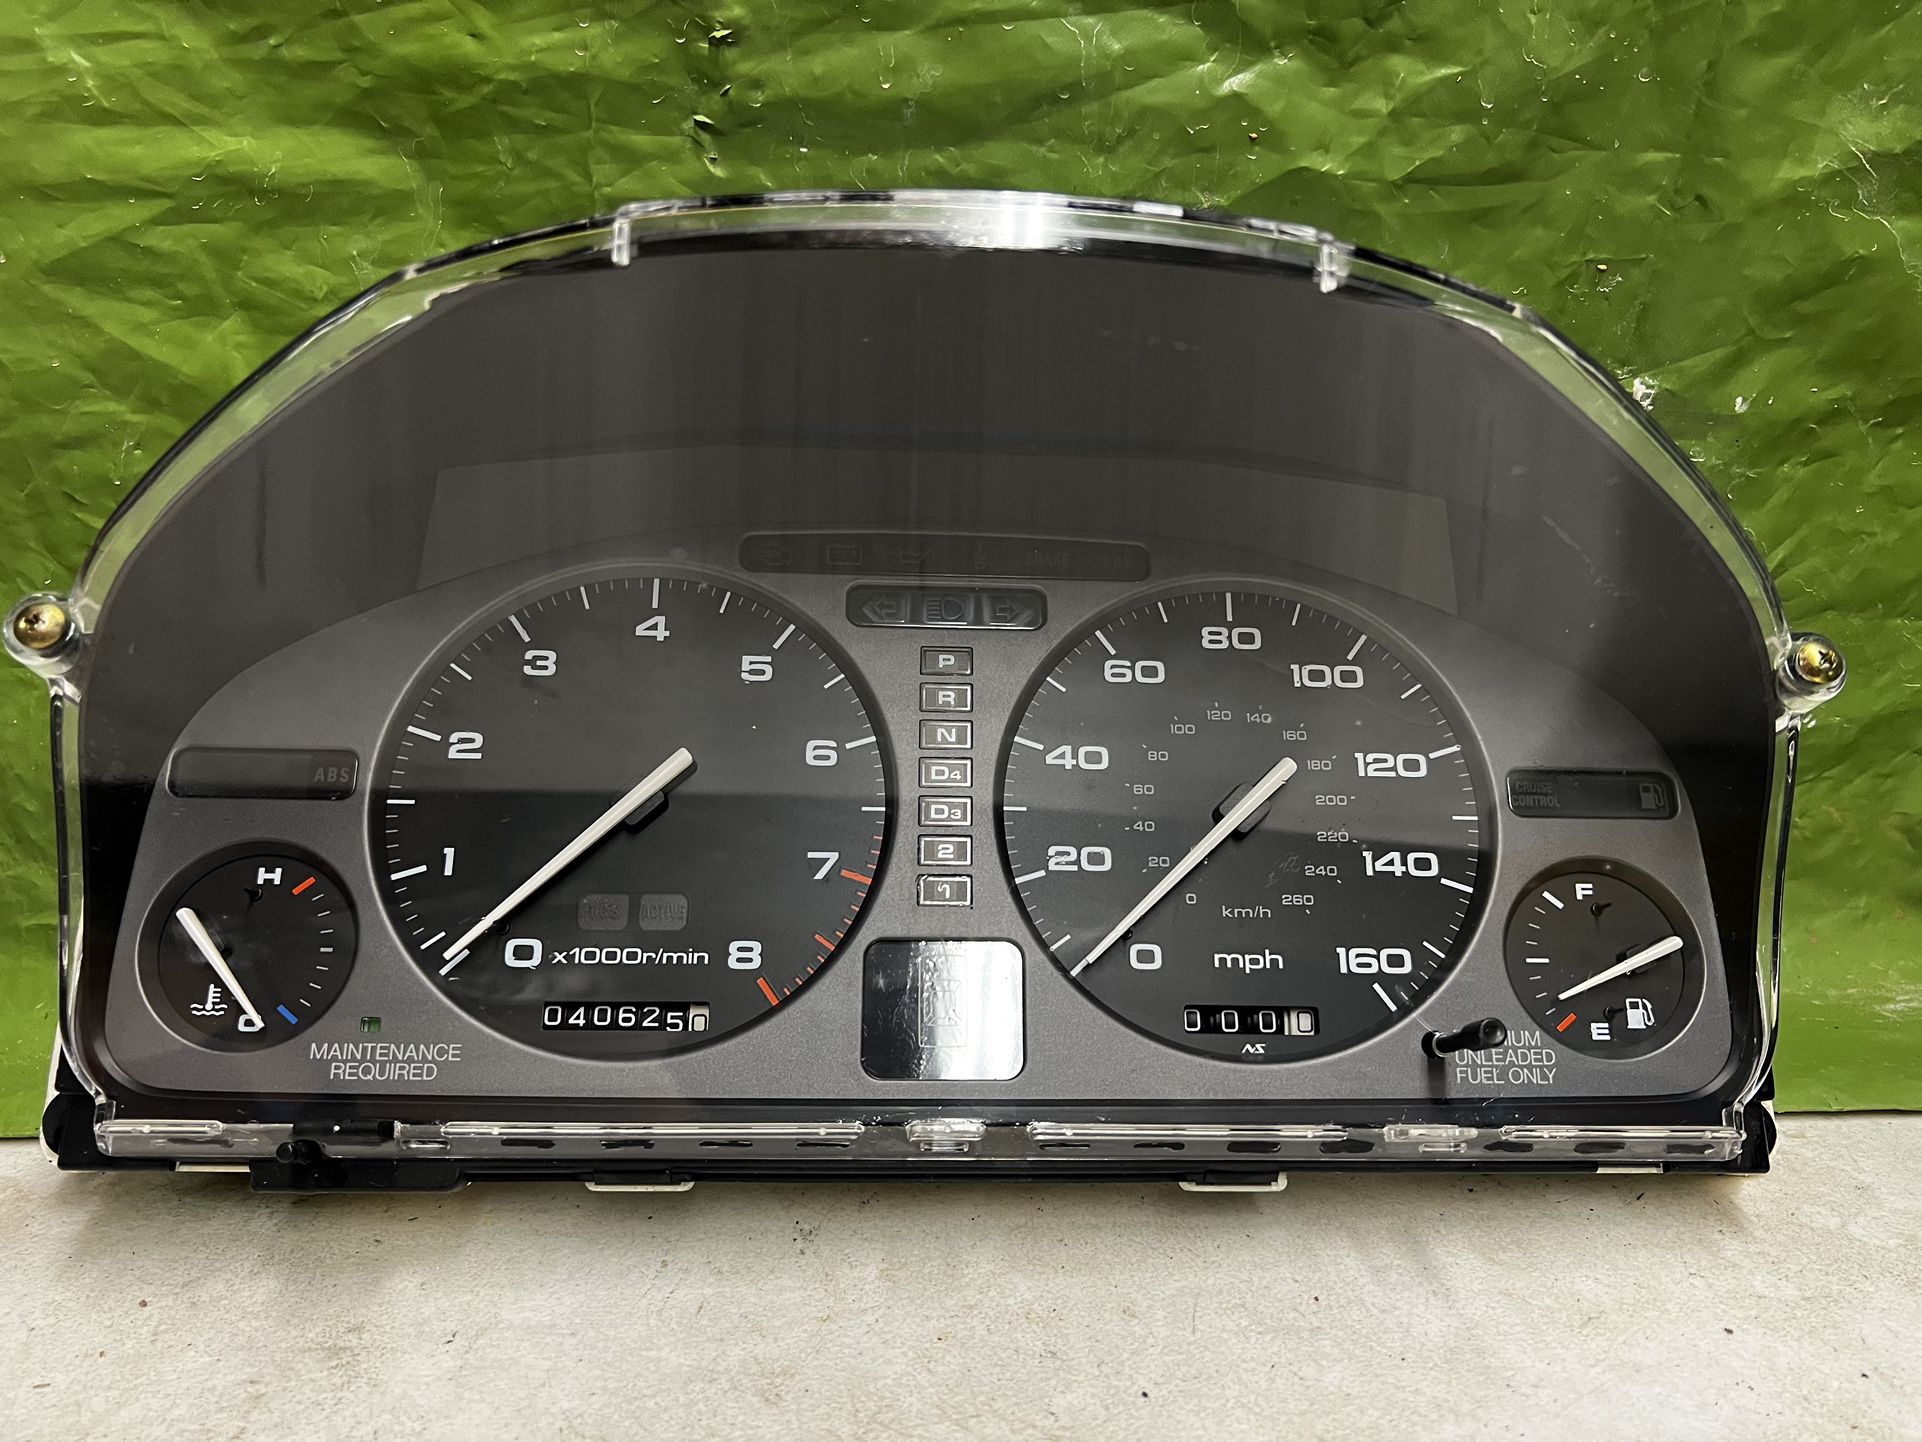 93-95 Acura Legend 4DR A/T Instrument Cluster Speedometer Meter Gauges OEM